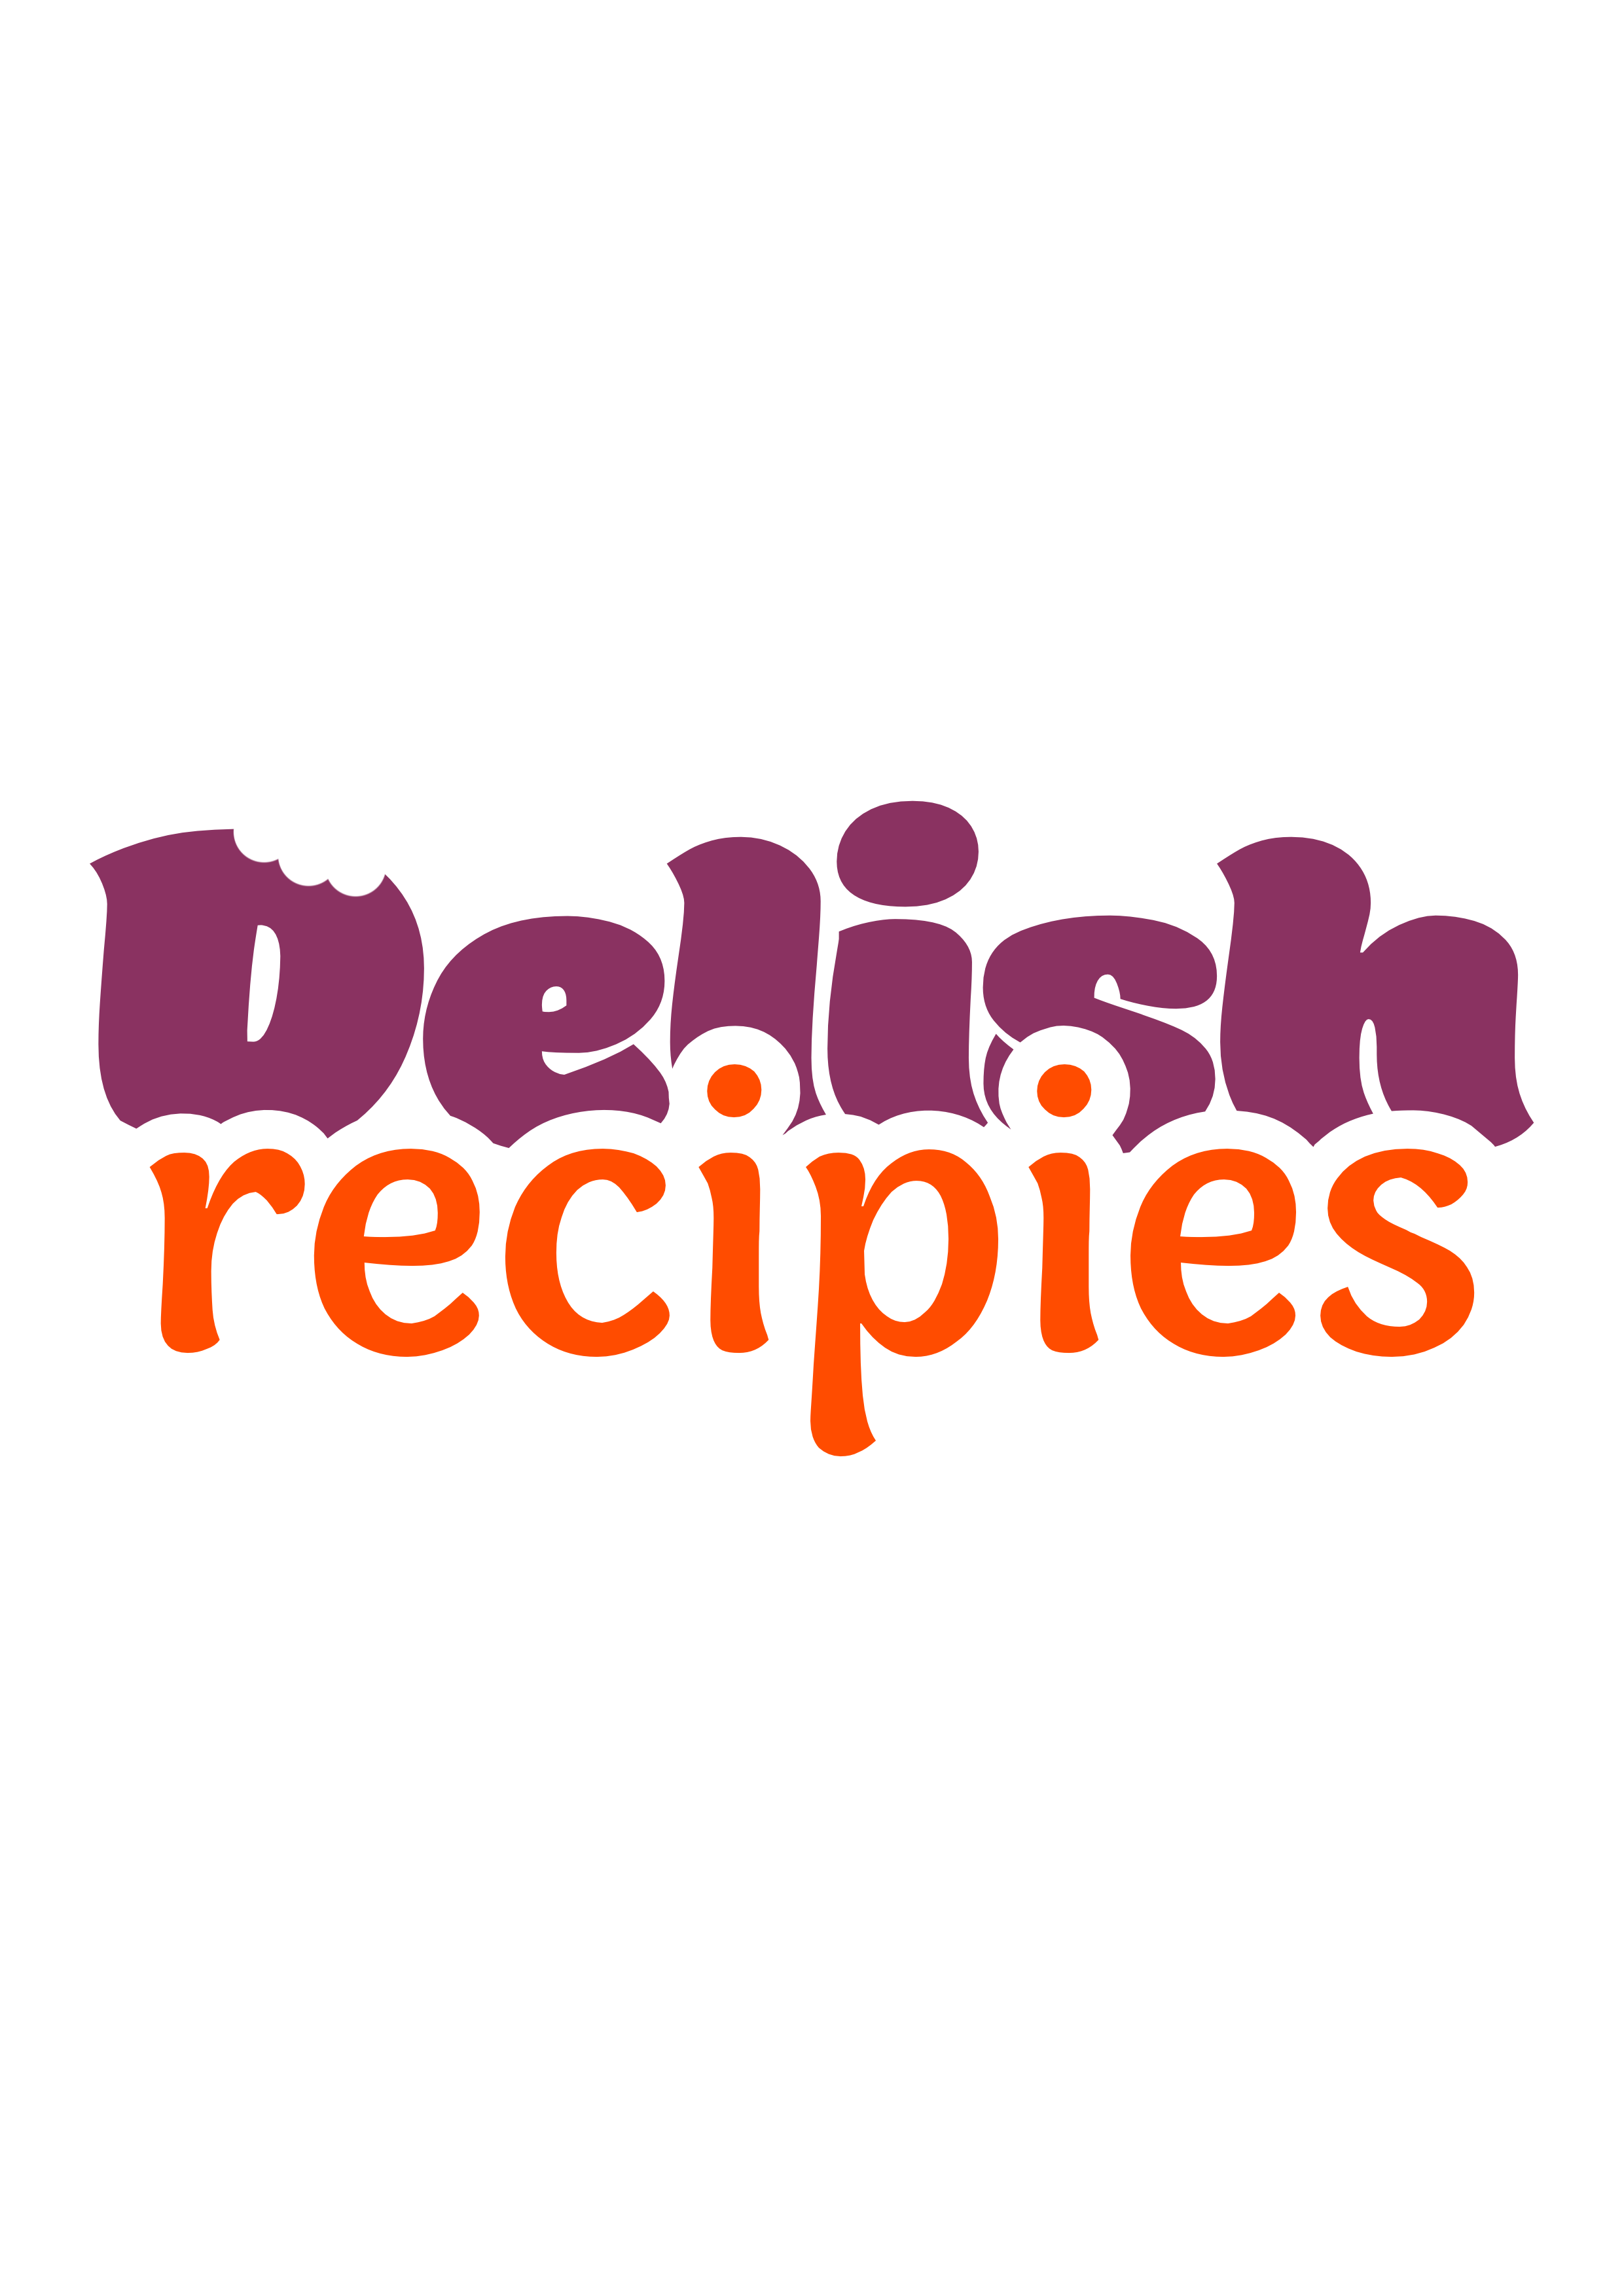 Delishrecipies | Home Delicious Meals & Recipes